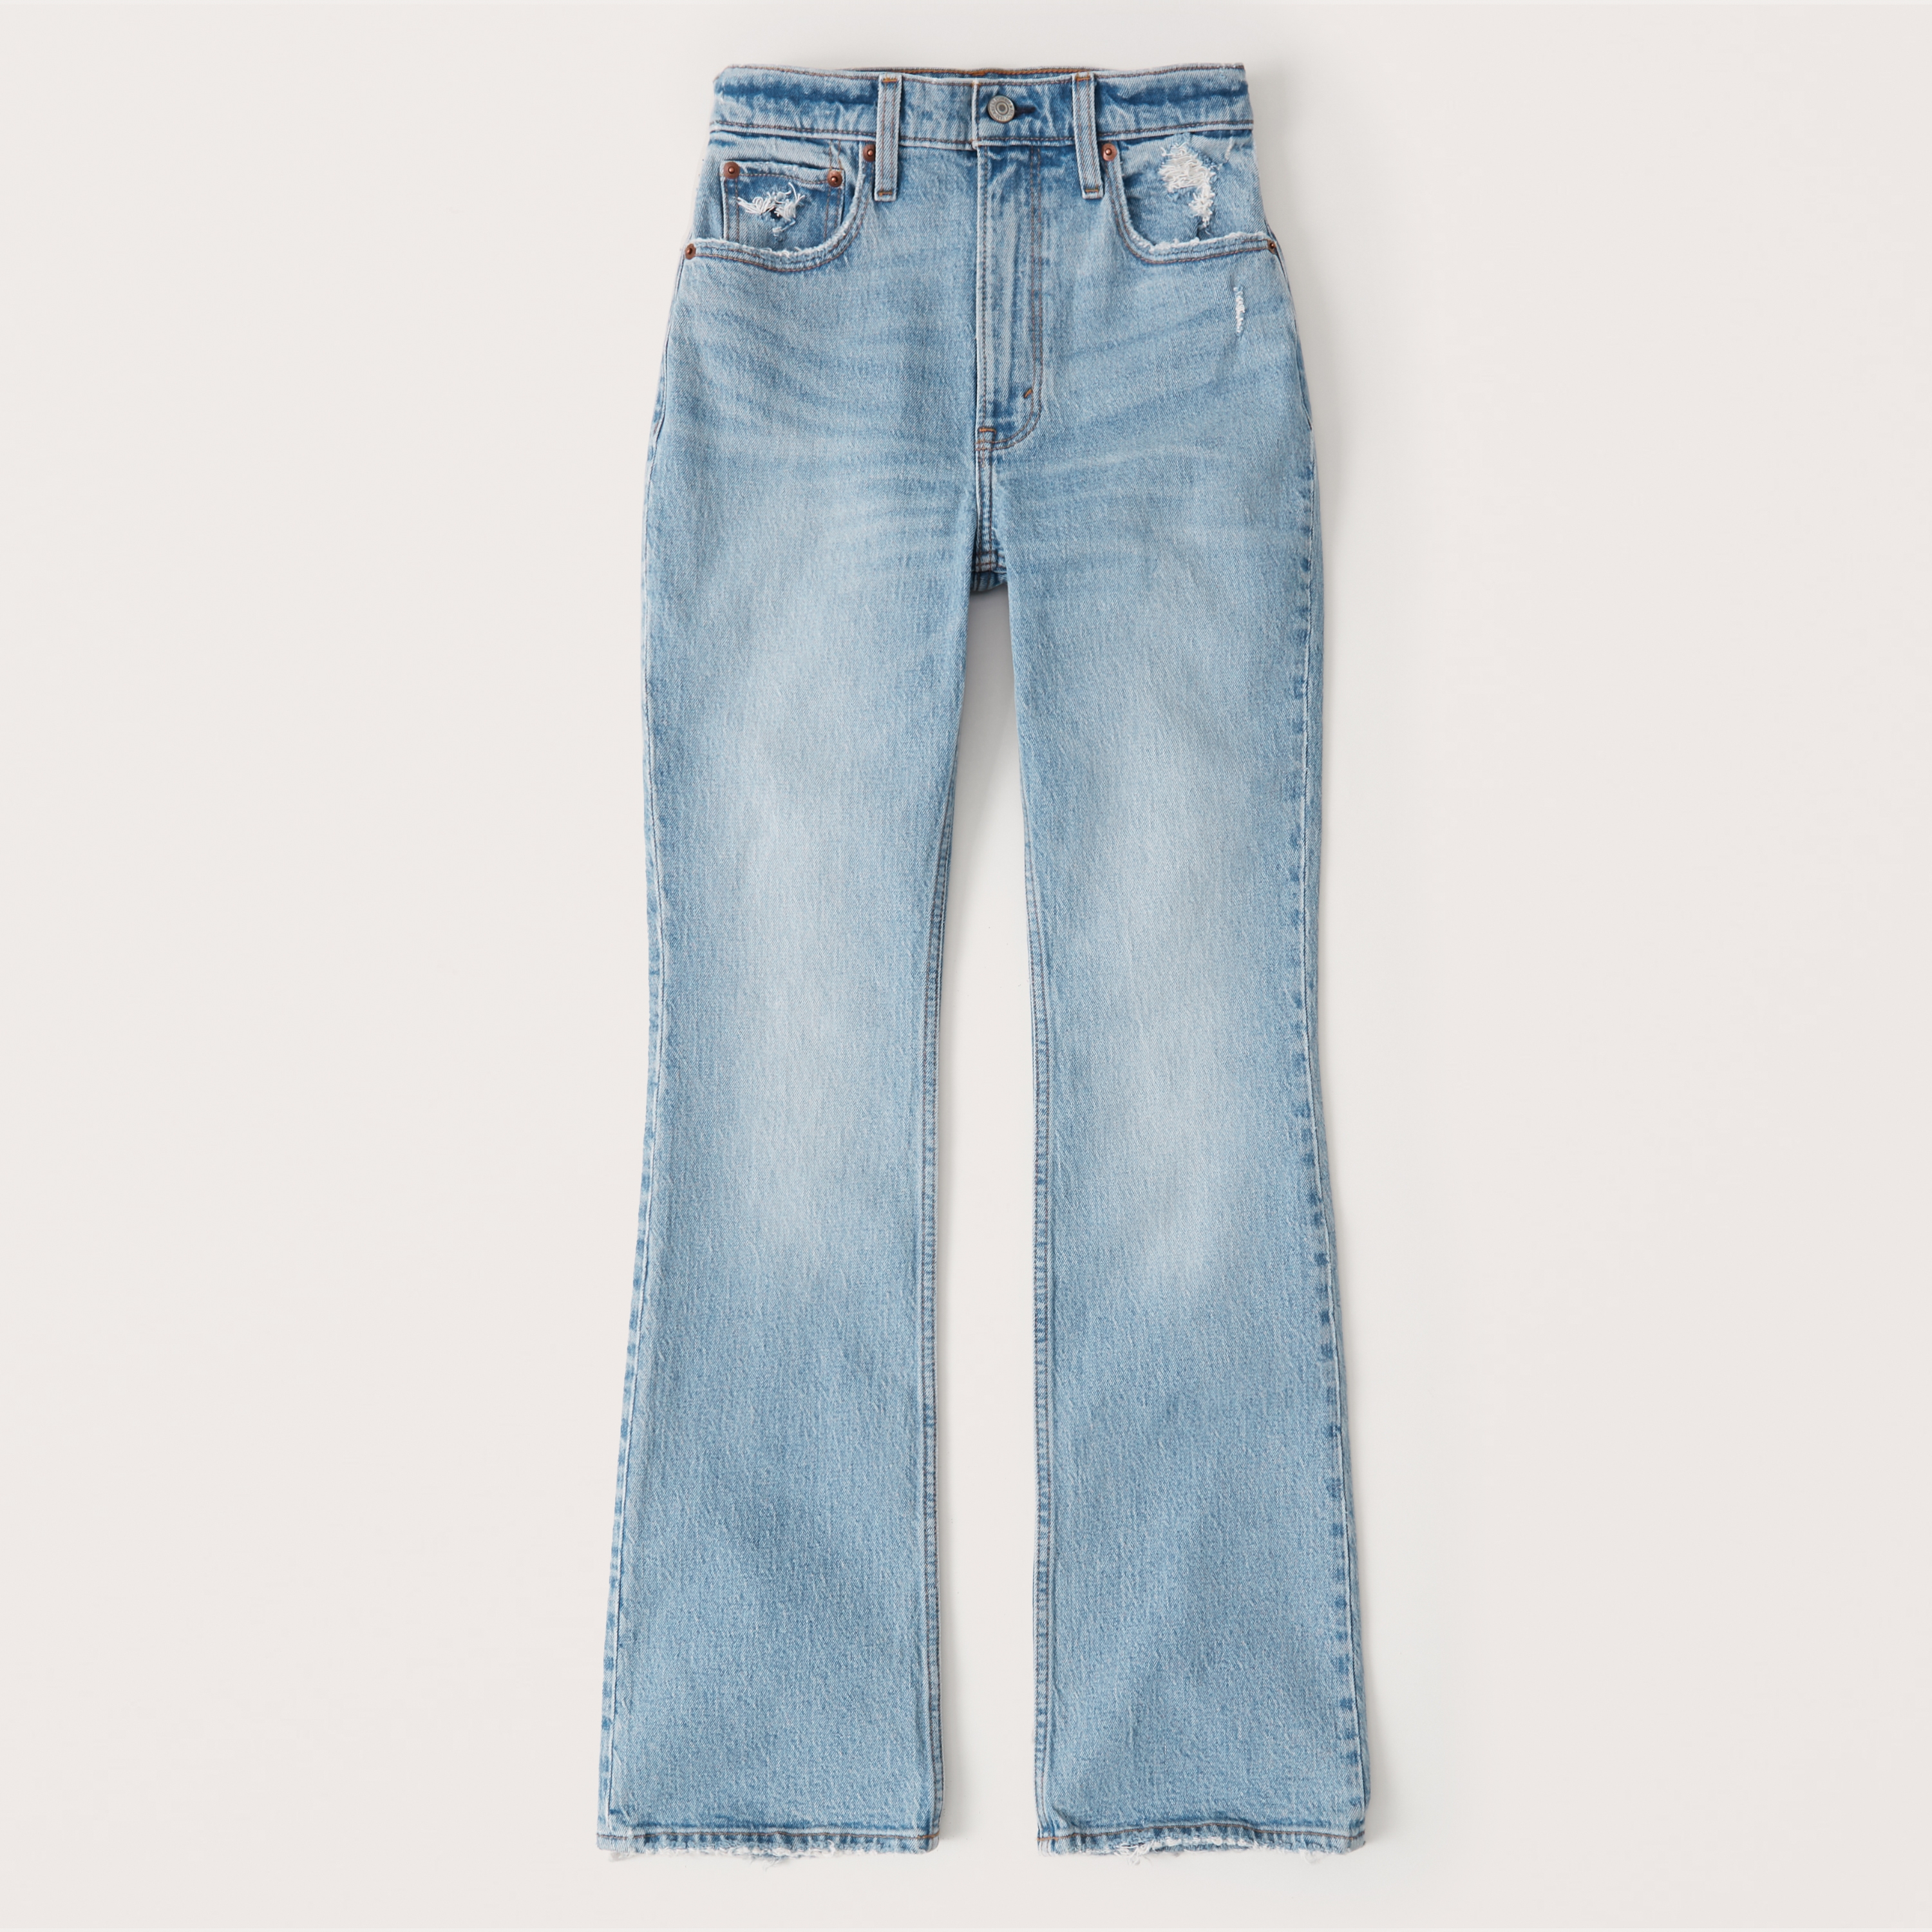 Indie Aesthetics Slim Brown Flare Jeans Vintage Solid High Waist